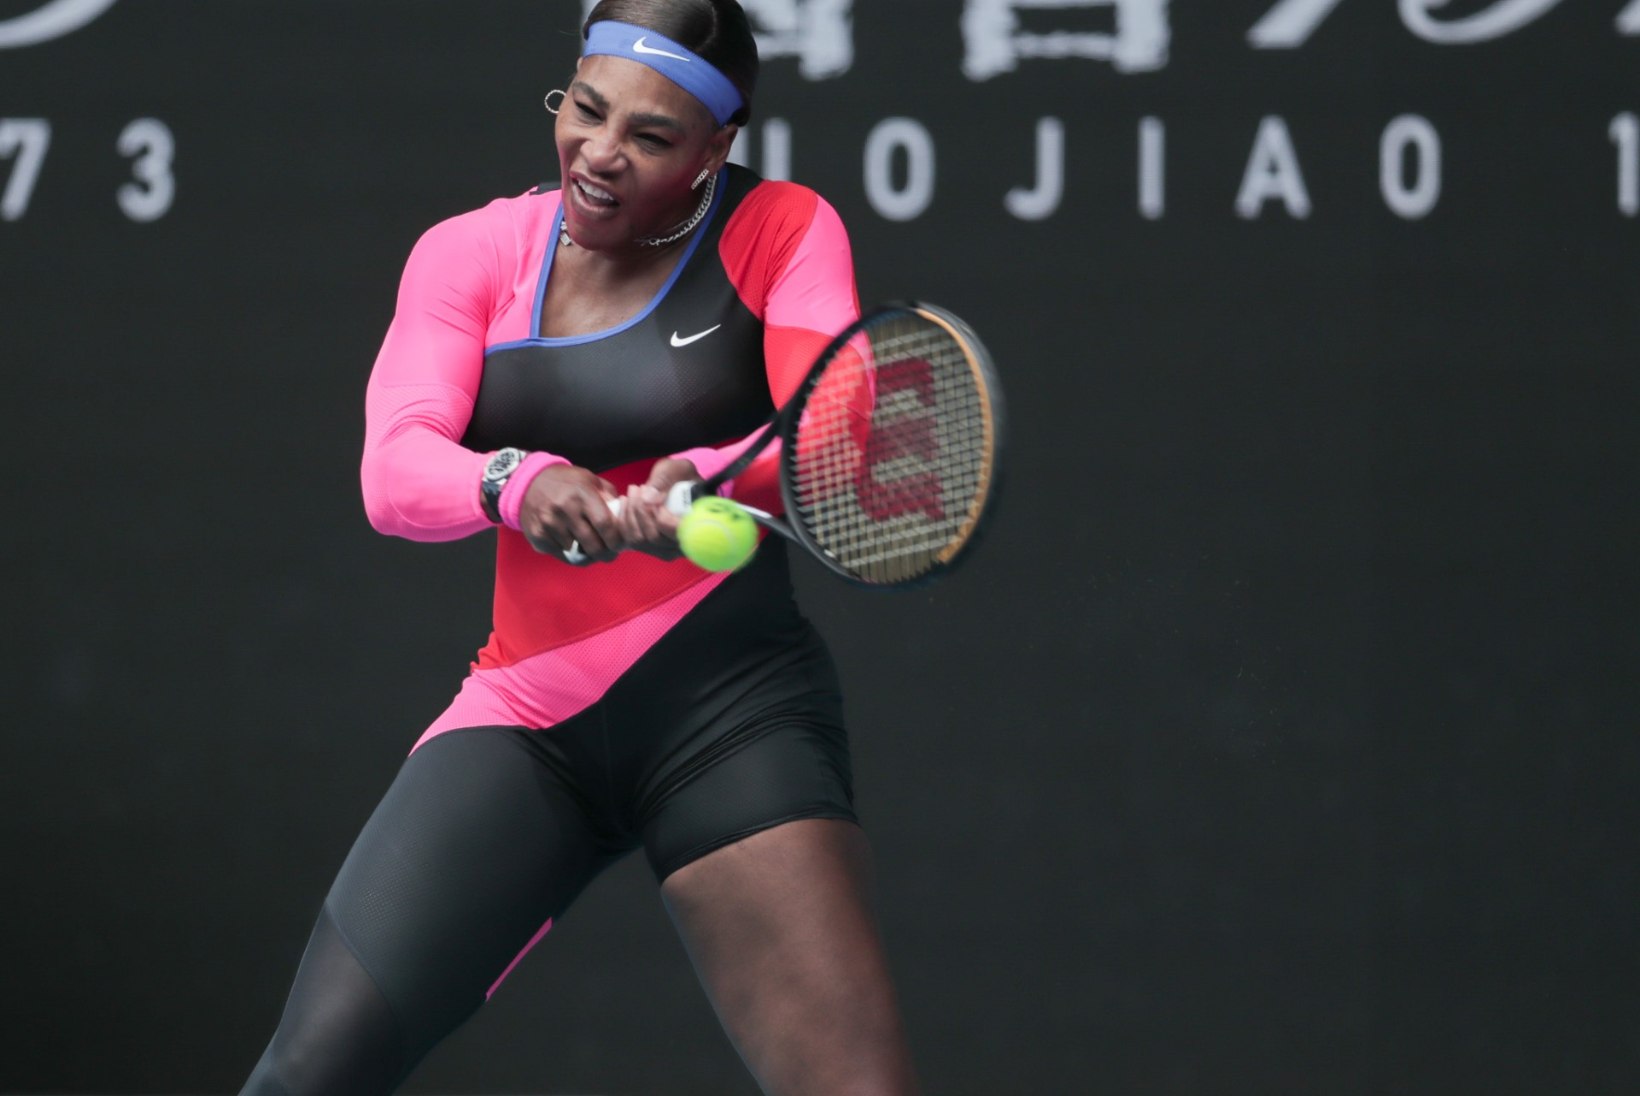 FOTOD | Serena Williams üllatas Australian Openi publikut julge kostüümiga